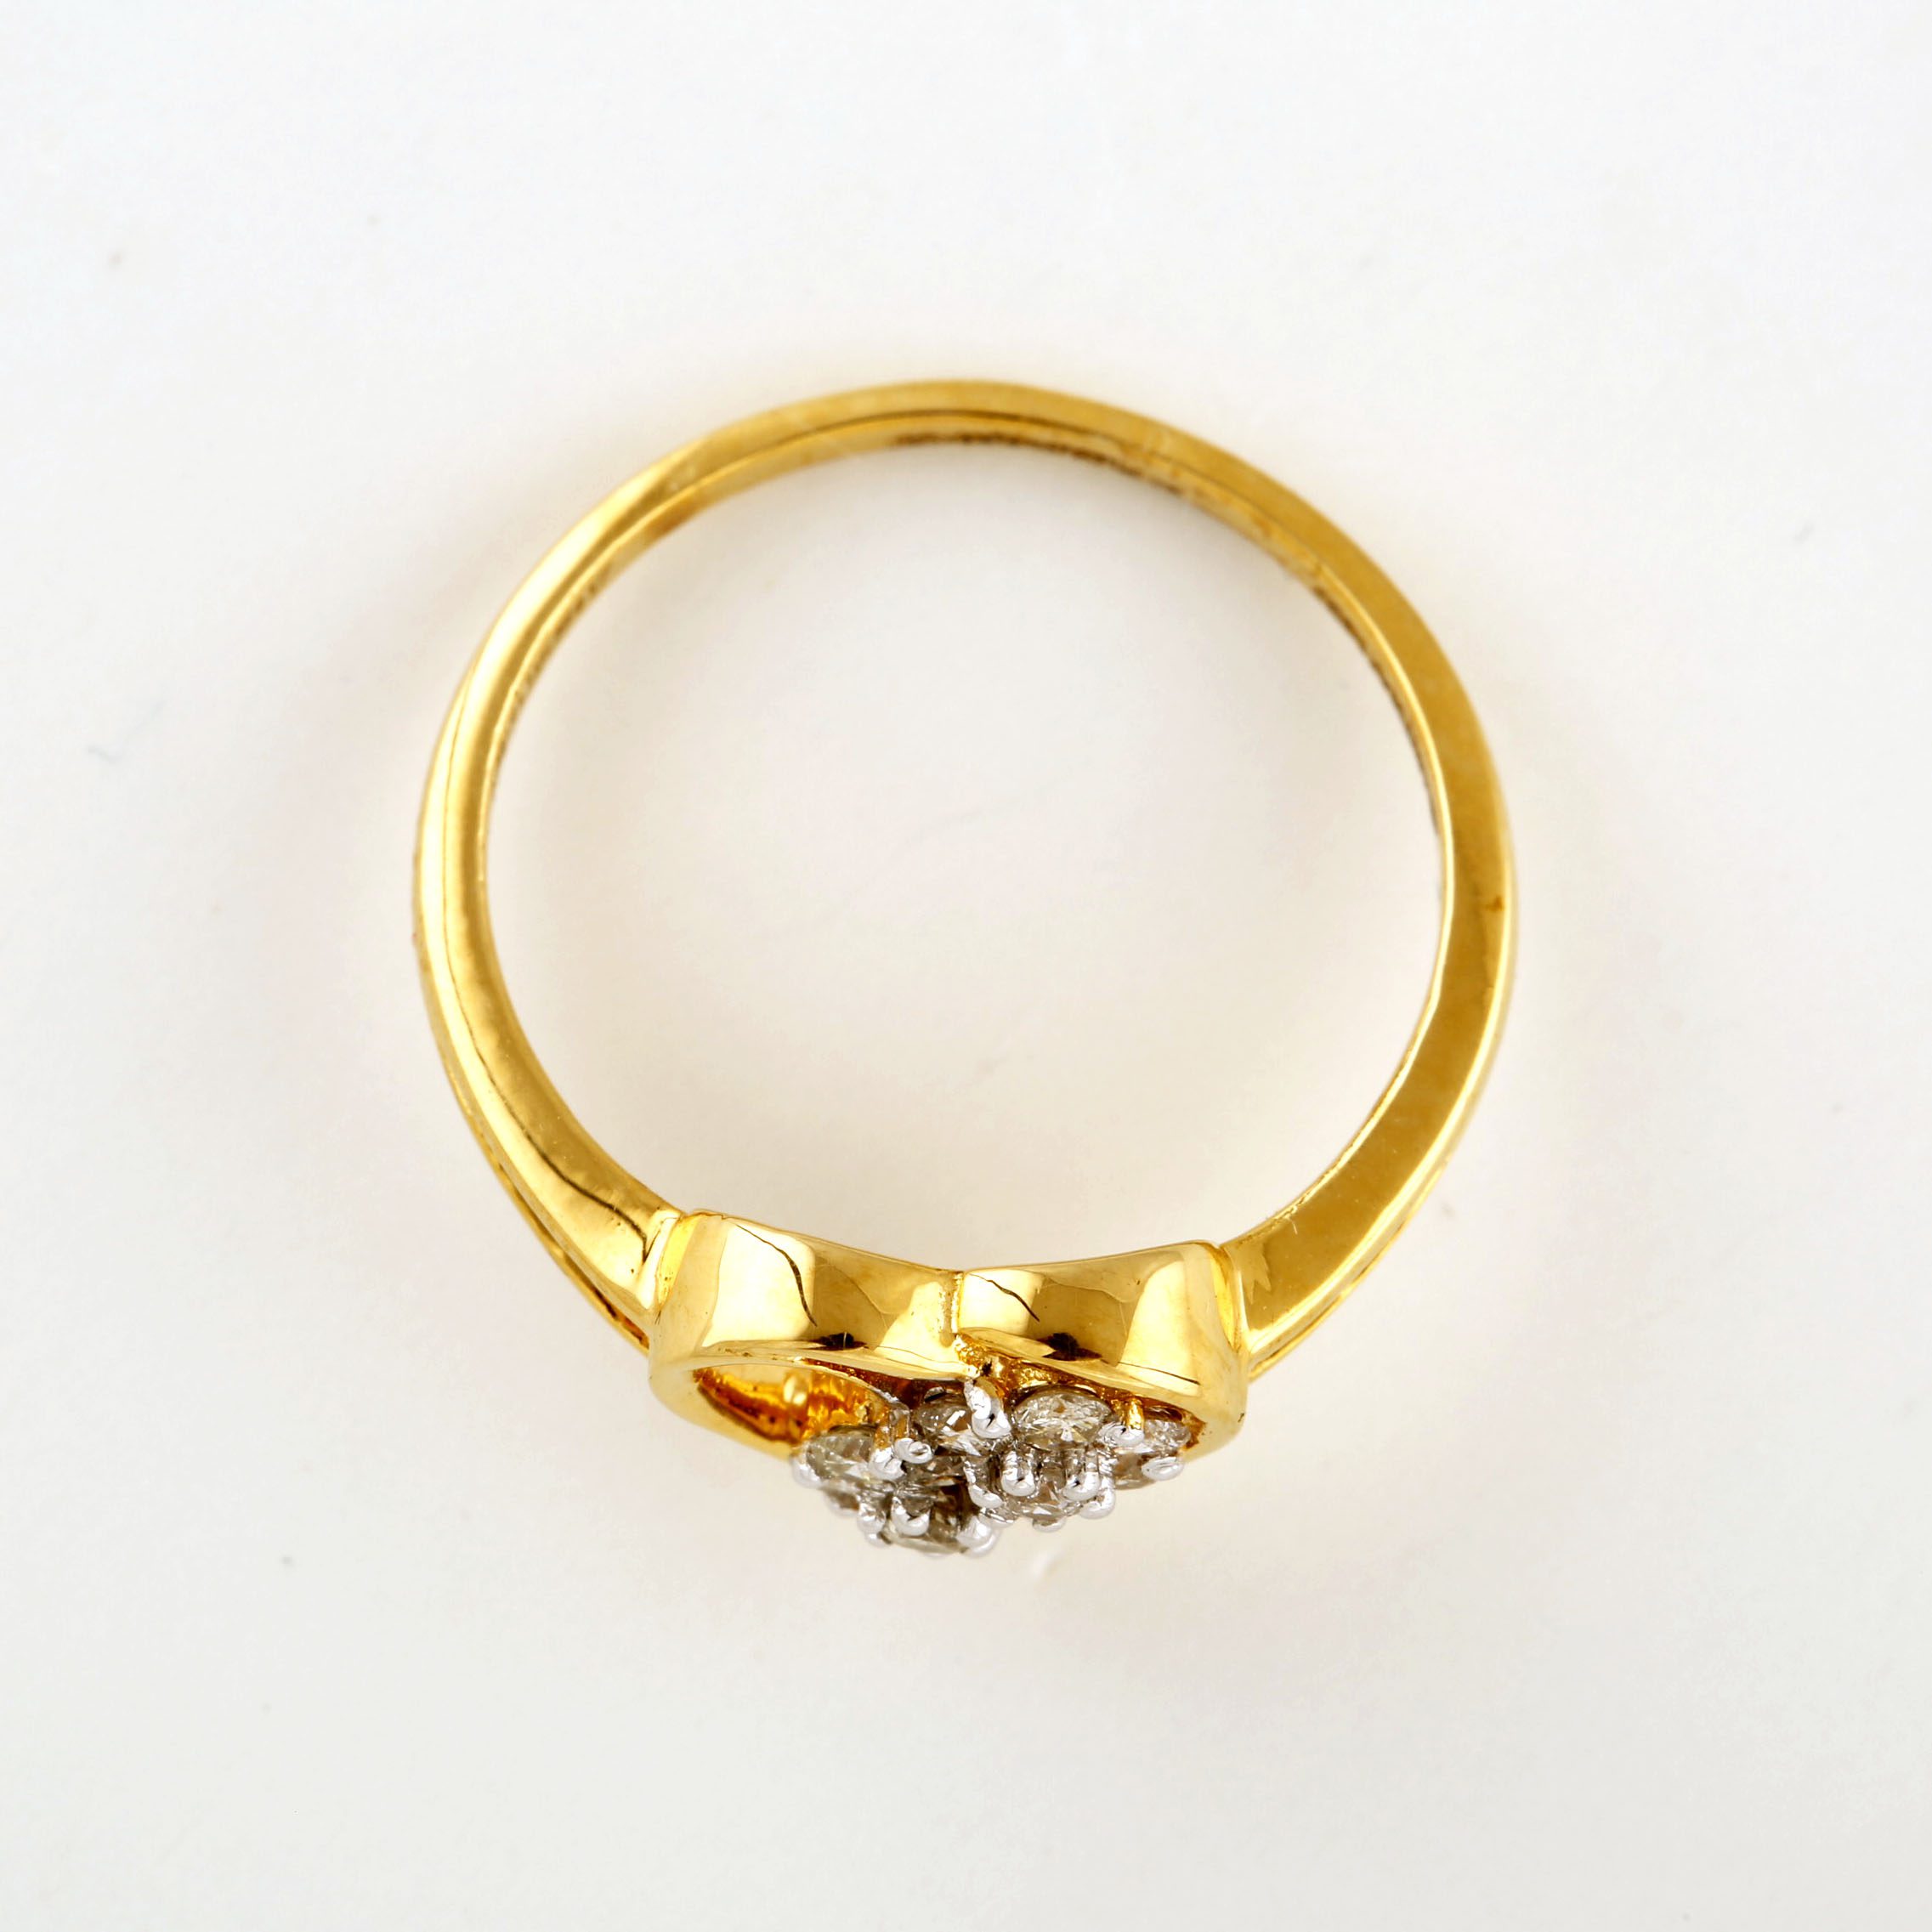 Buy Rose Gold Heart Ring, Heart Shape Ring, 14k Gold Ring, Open Heart Ring,  Love Ring, Stacking Ring, Birthday Gift for Her, Friendship Ring Online in  India - Etsy